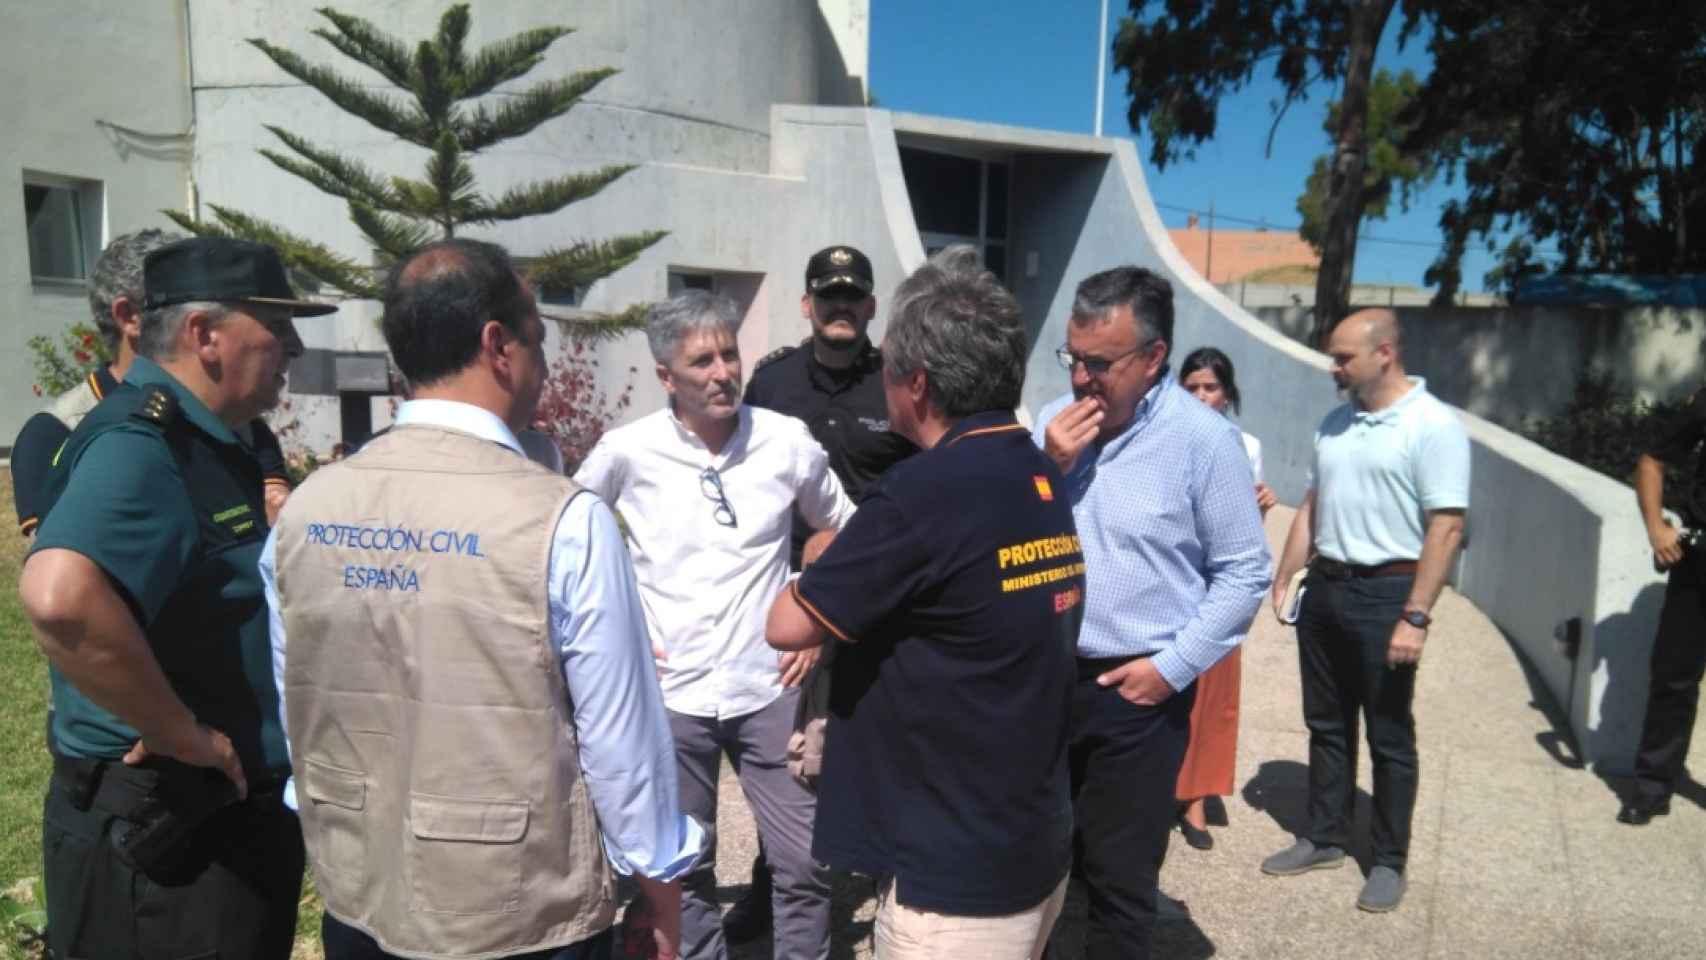 Grande-Marlaska acude a Algeciras a supervisar el trabajo en los centros de inmigración.